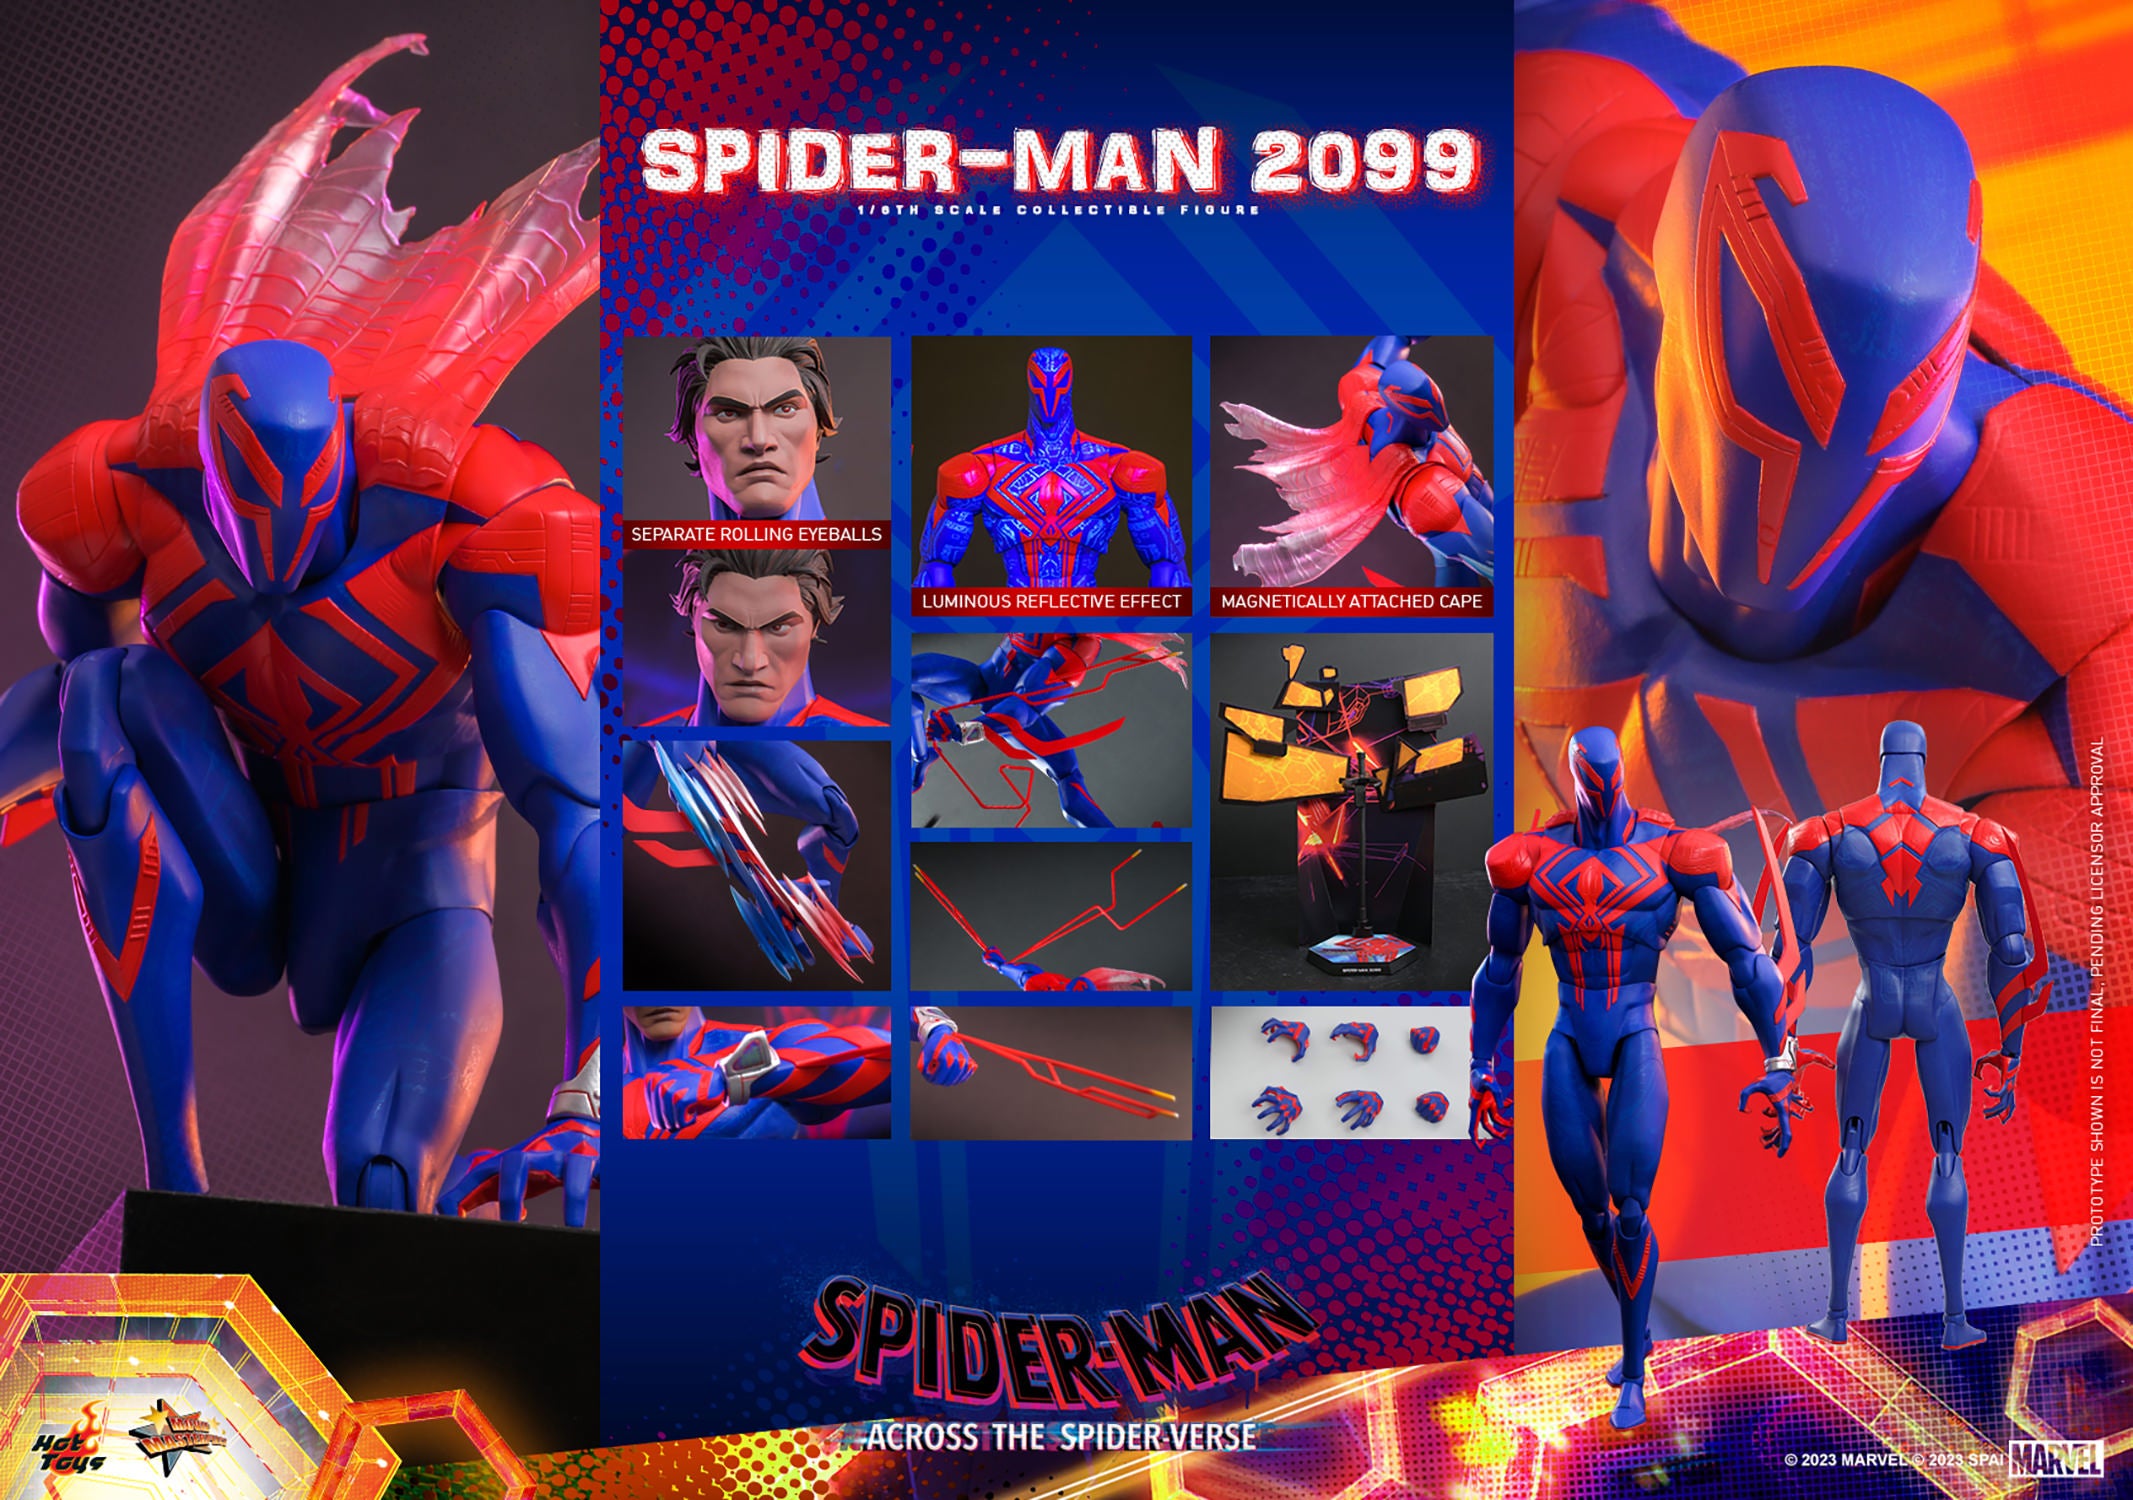 Spider-Man 2099 #39 (Marvel,1996) NM- 9.2 Featuring Spider-Man